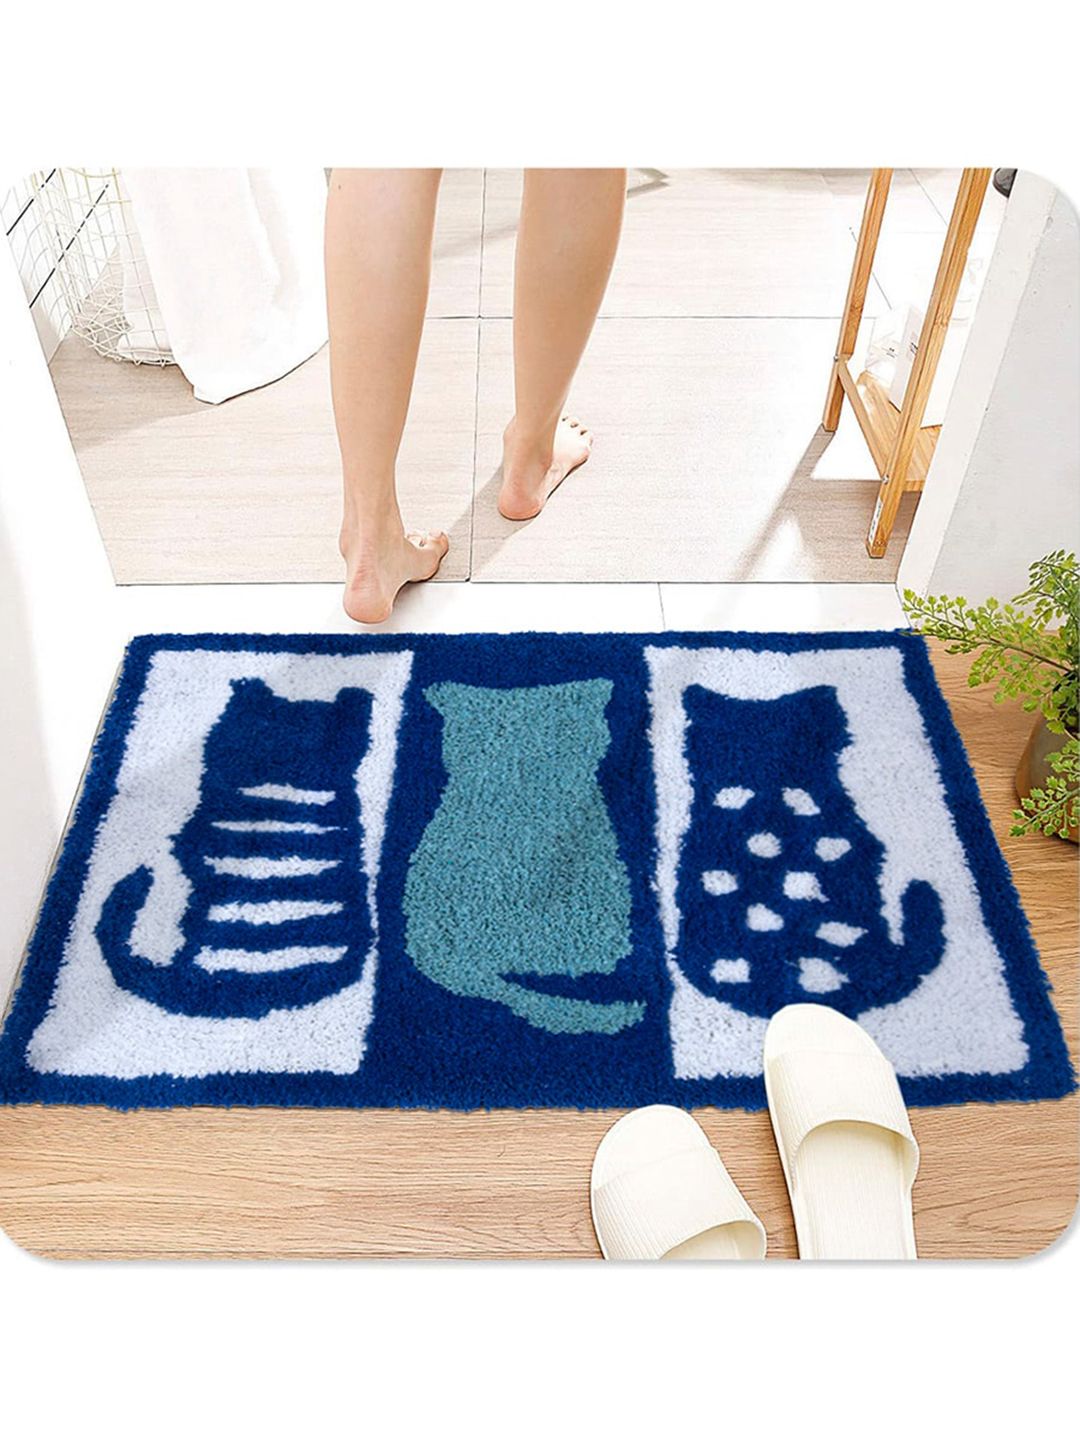 AAZEEM Blue Cat Printed Anti-Skid Cotton Doormats Price in India